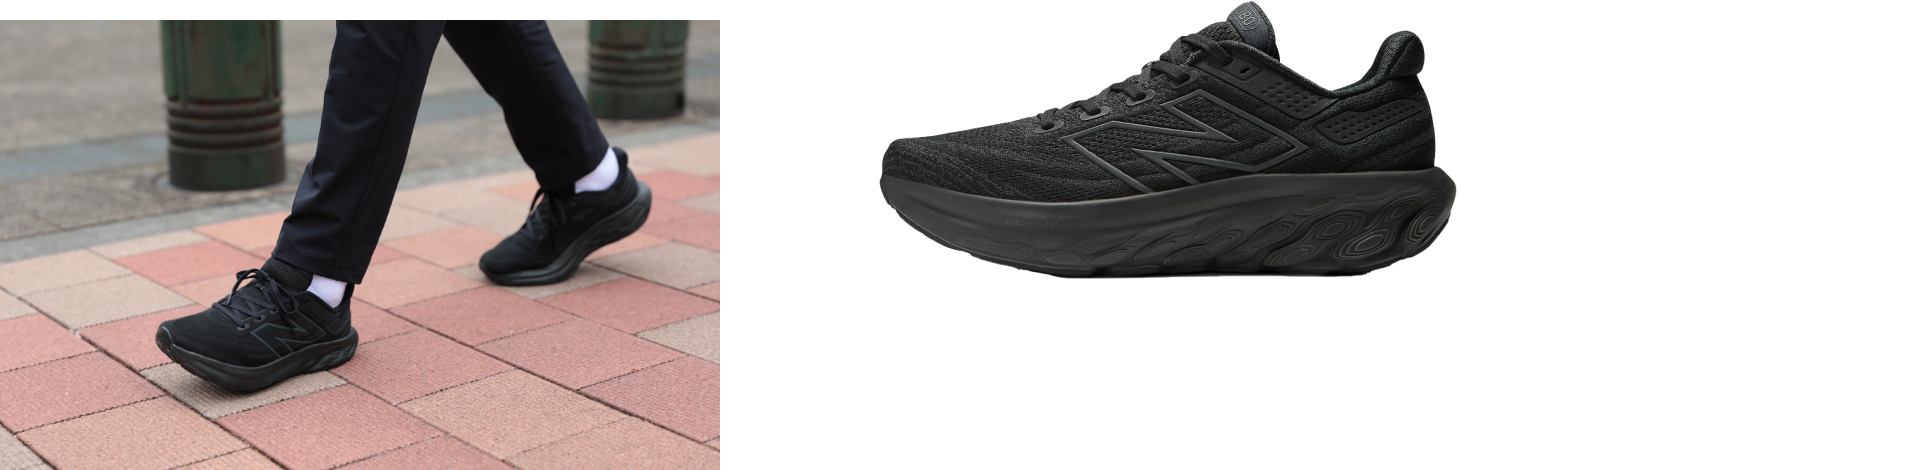 Fresh Foam X 1080v13